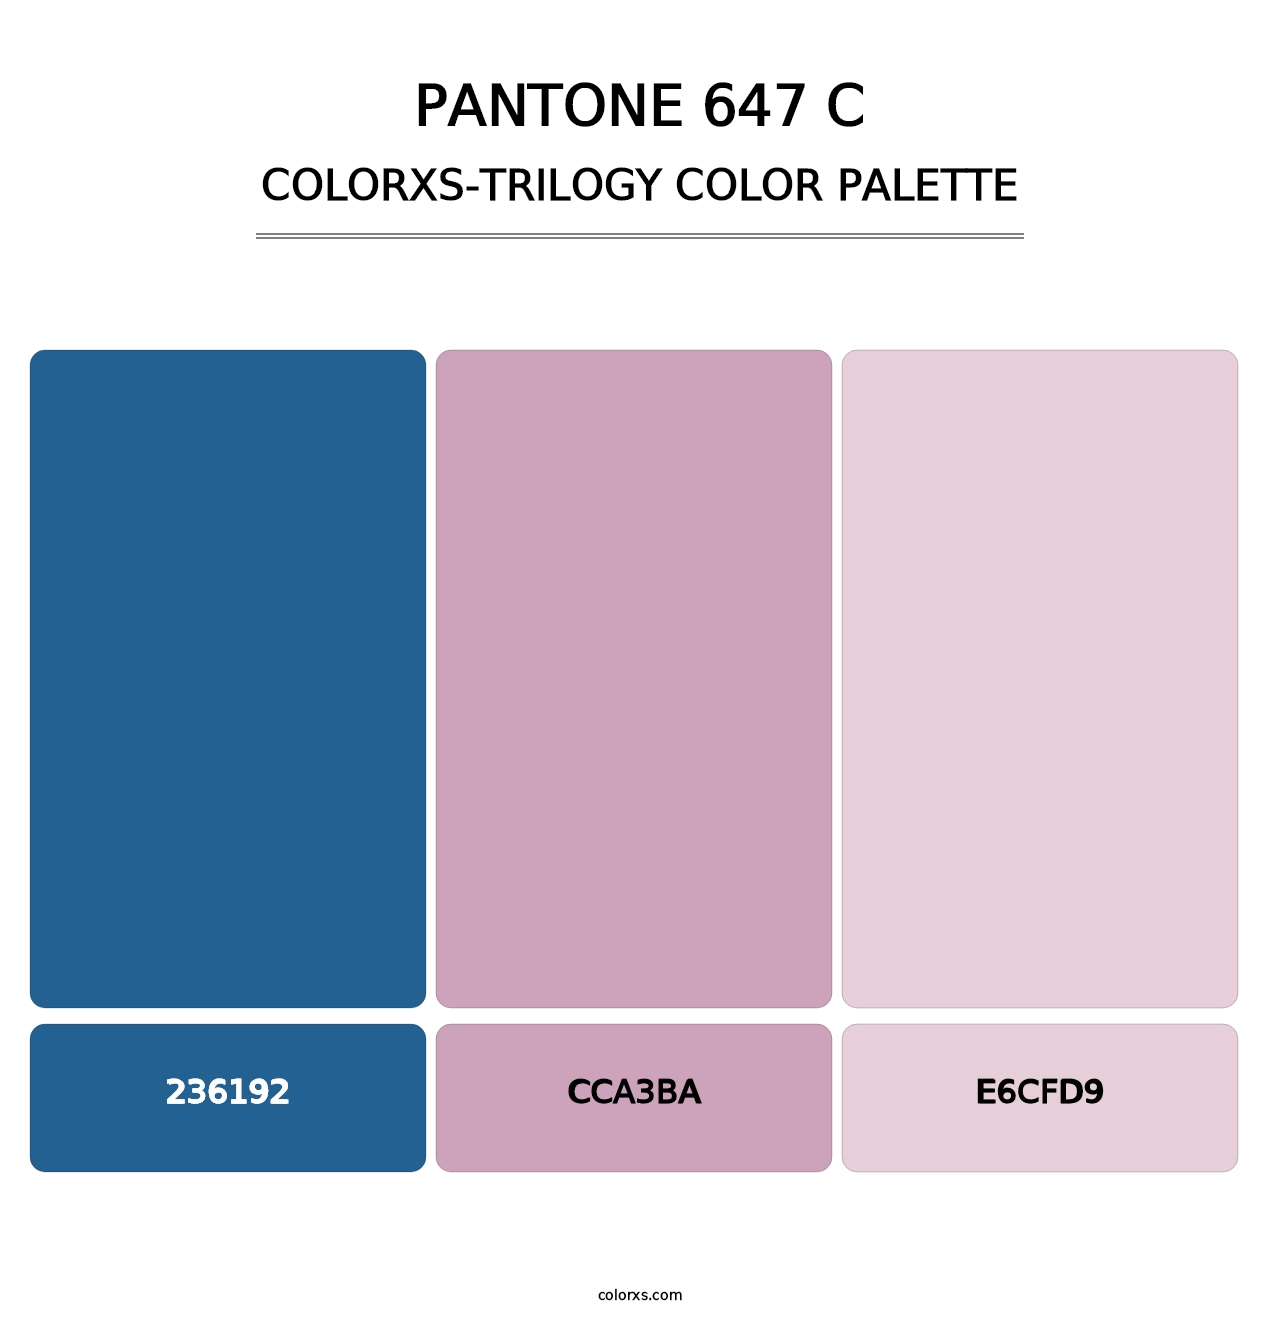 PANTONE 647 C - Colorxs Trilogy Palette